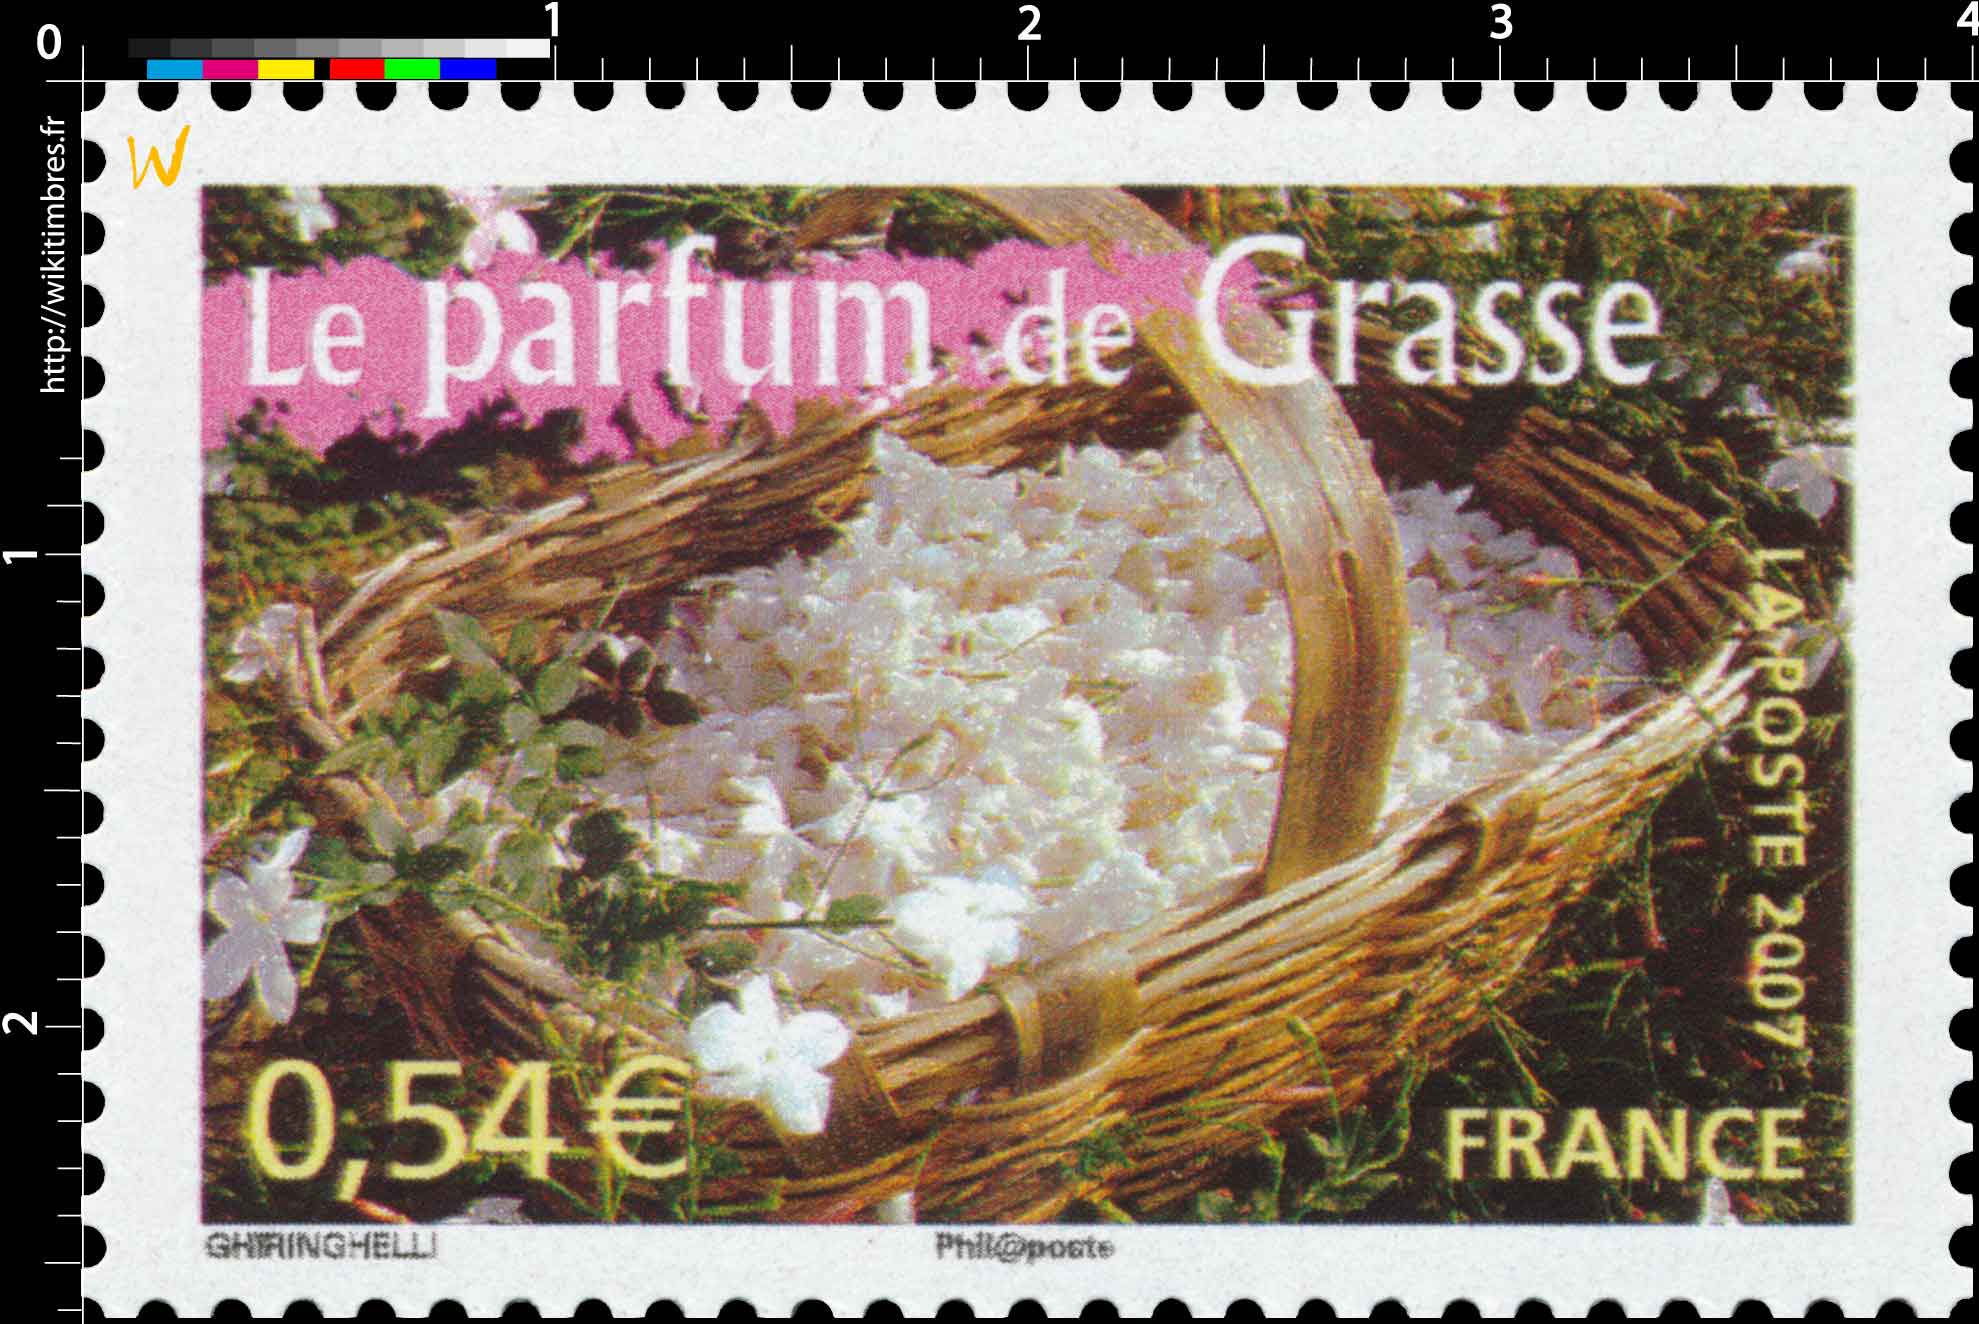 2007 Le parfum de Grasse